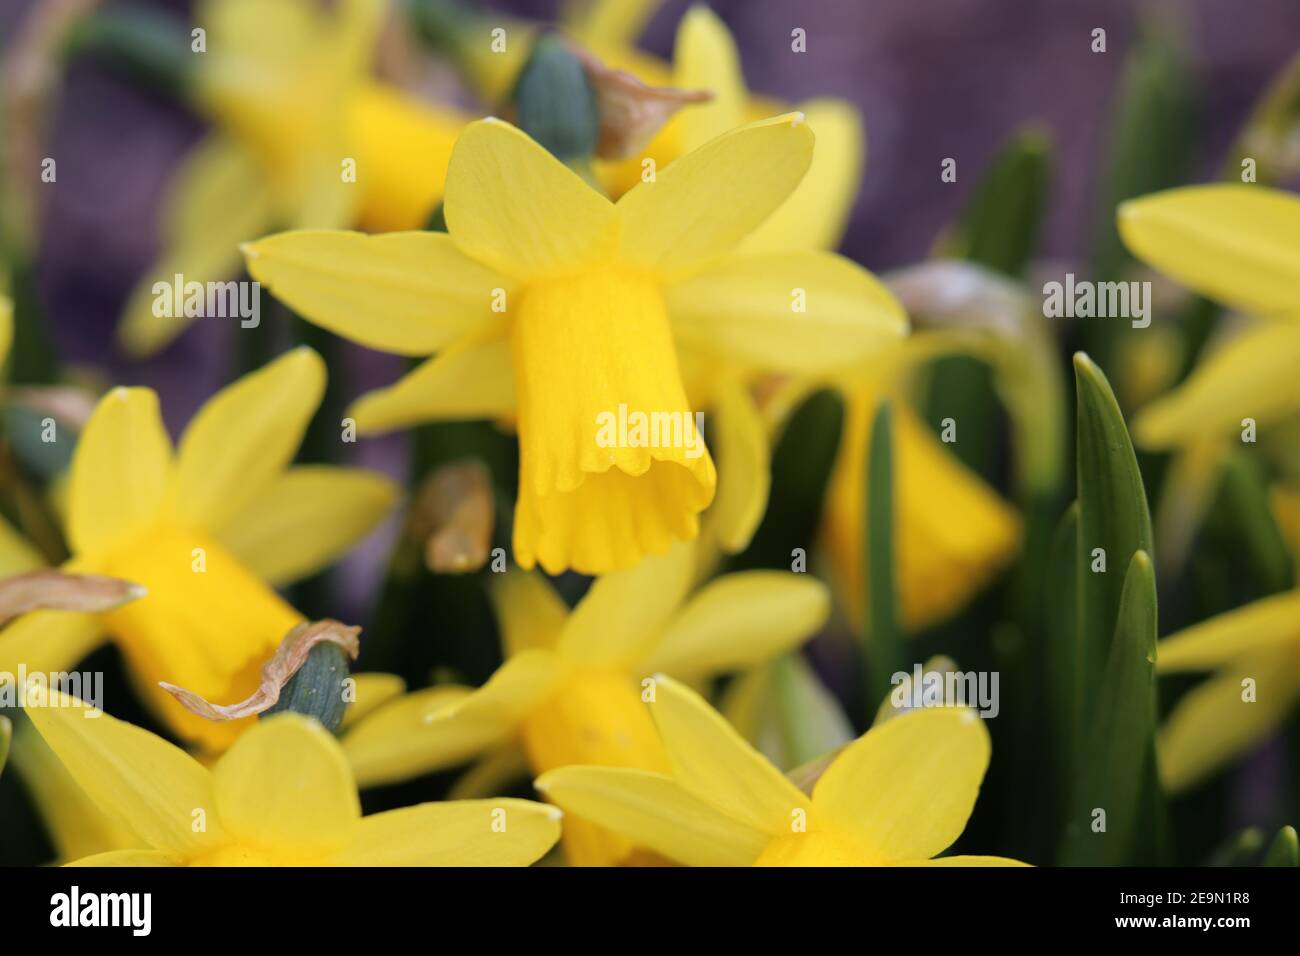 Giallo daffodil / narcissus fiori in una foto closeup con foglie verdi sullo sfondo. I narcisi sono fiori perfetti per Pasqua / primavera. Foto Stock